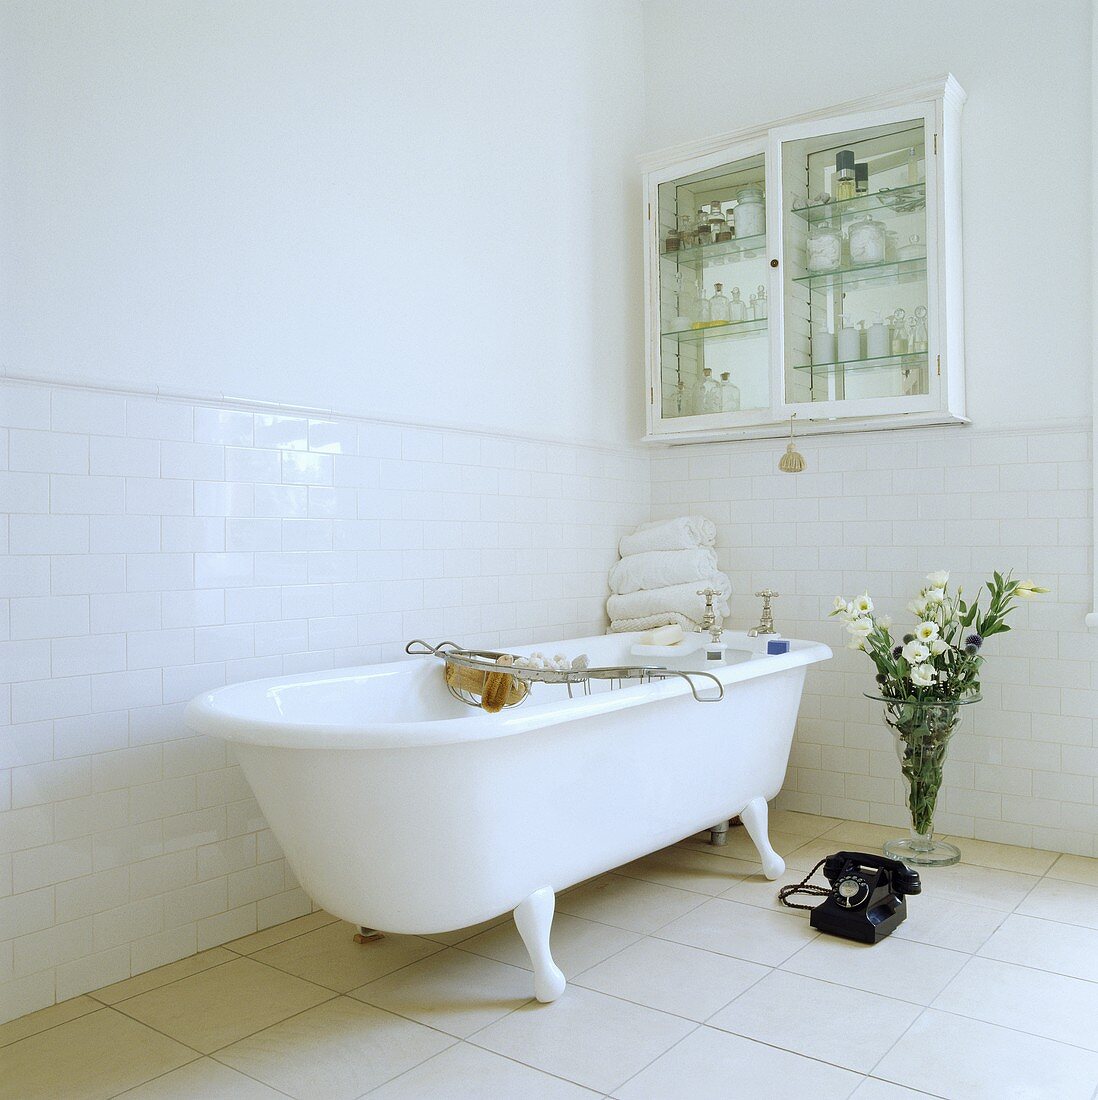 Eine freistehende Badewanne mit Klauenfüßen und ein altes Telefon stehen in der einen Ecke des modernen und weißen Badezimmers